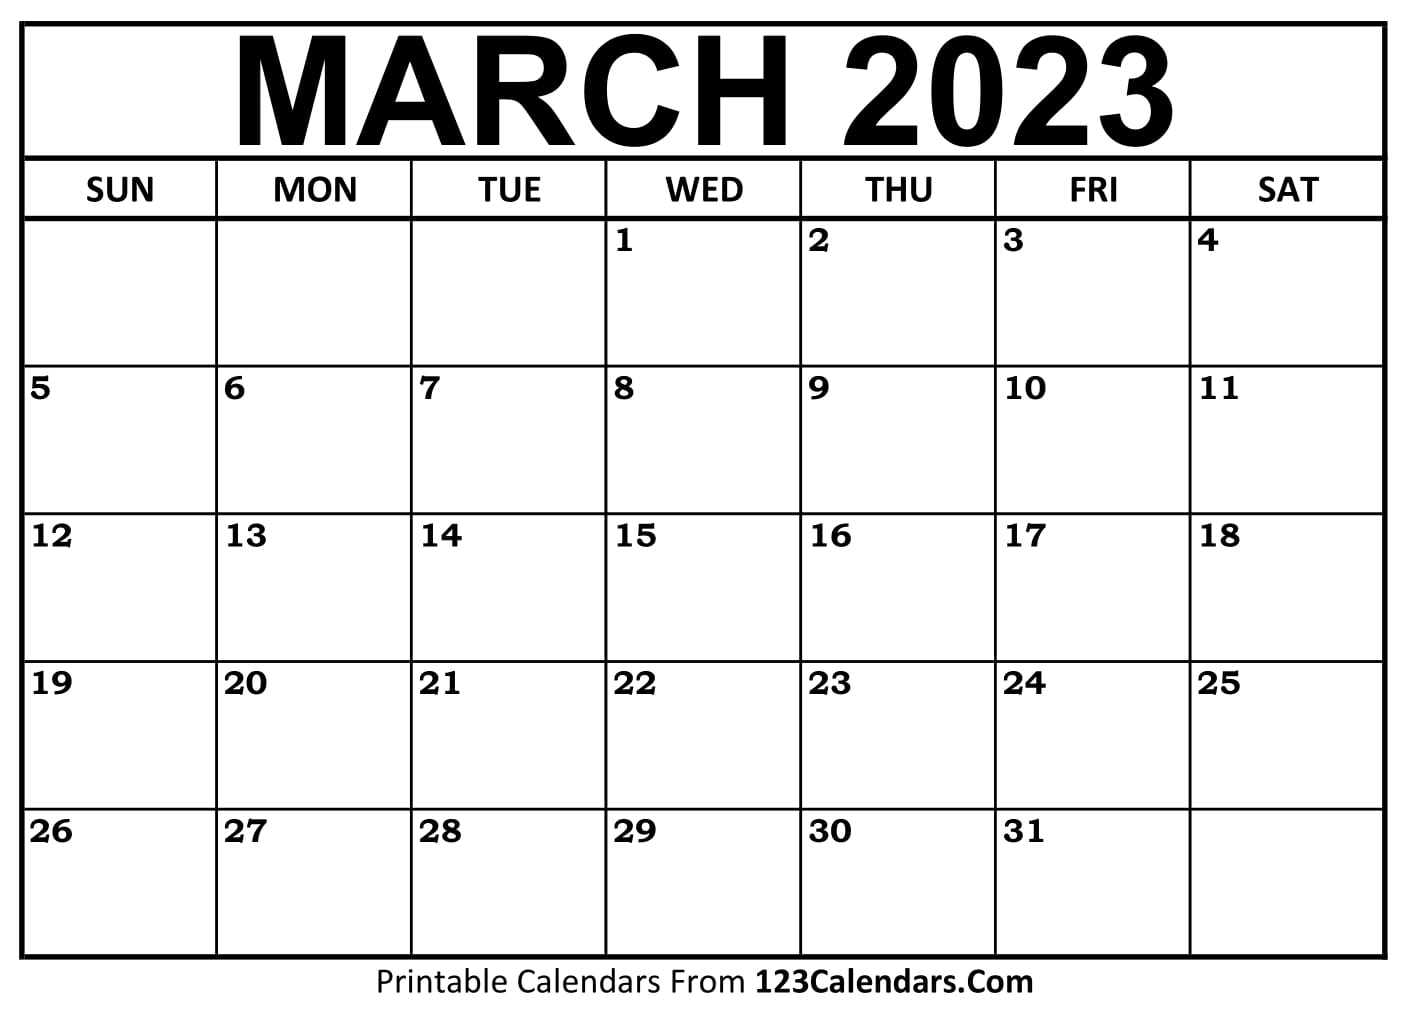 printable-march-2023-calendar-templates-123calendars-com